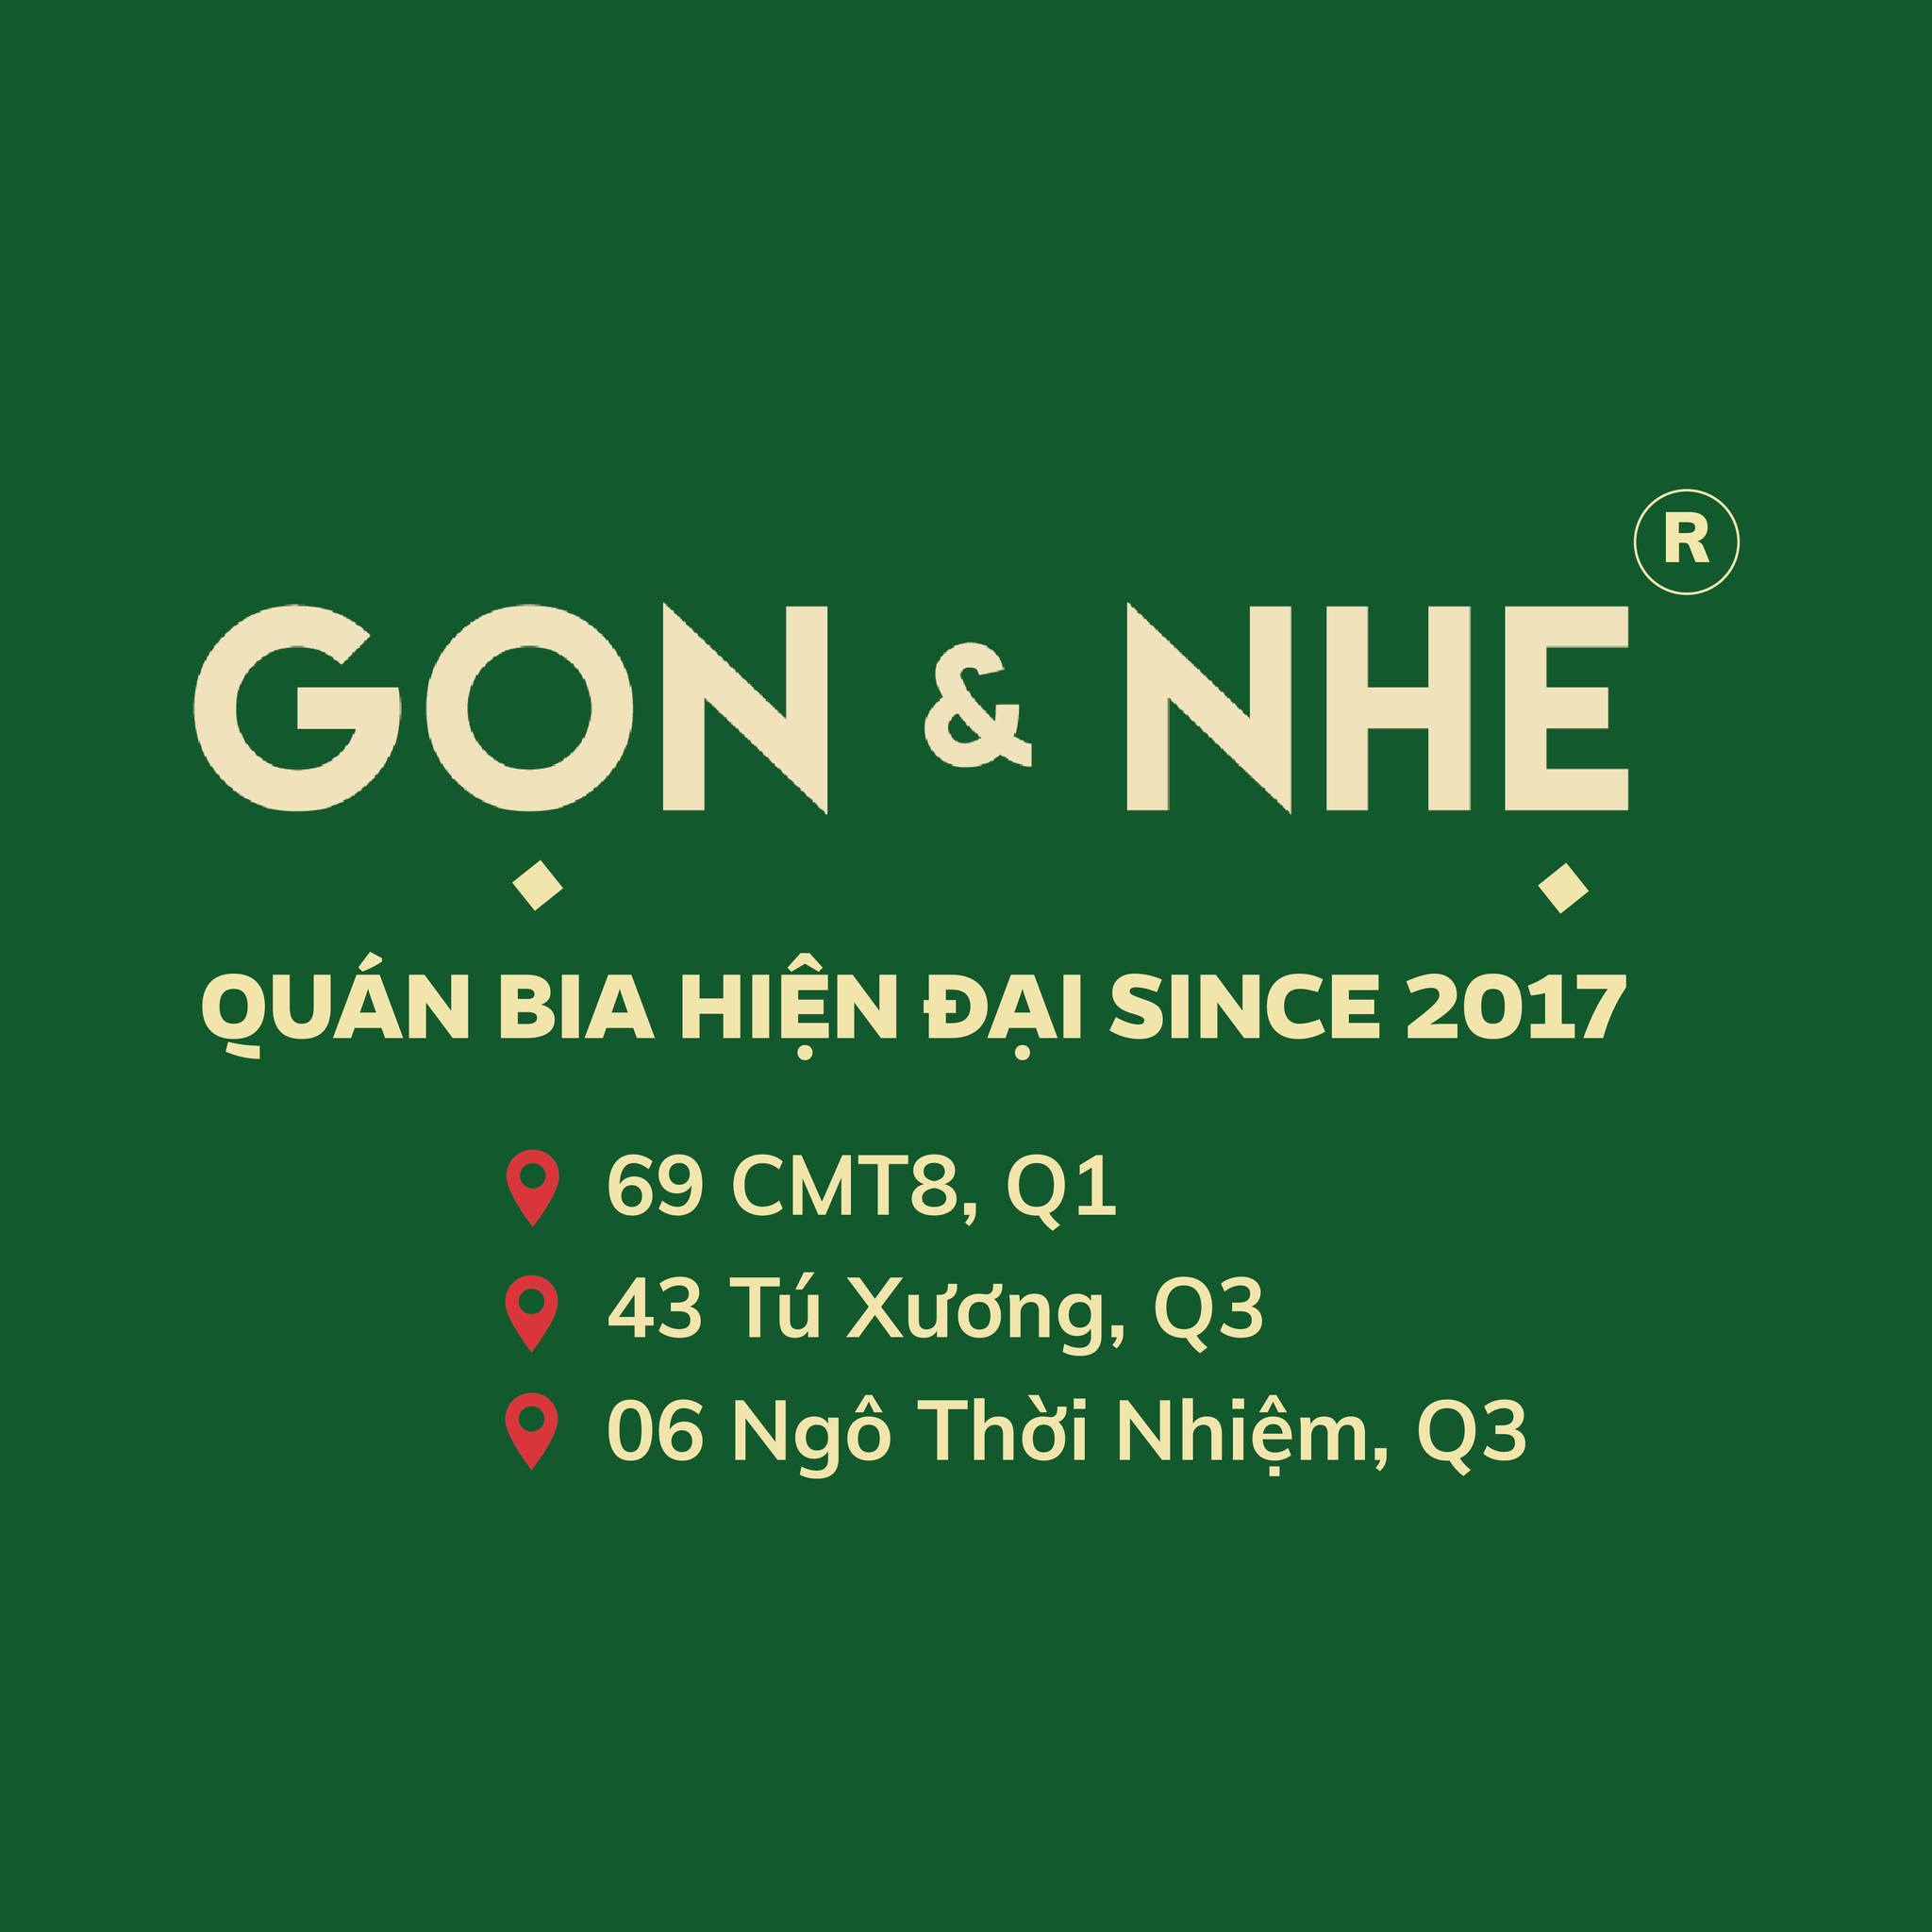 Top 40 danh sách các món ngon ngày Tết Việt Nam 3 miền (phần 4)